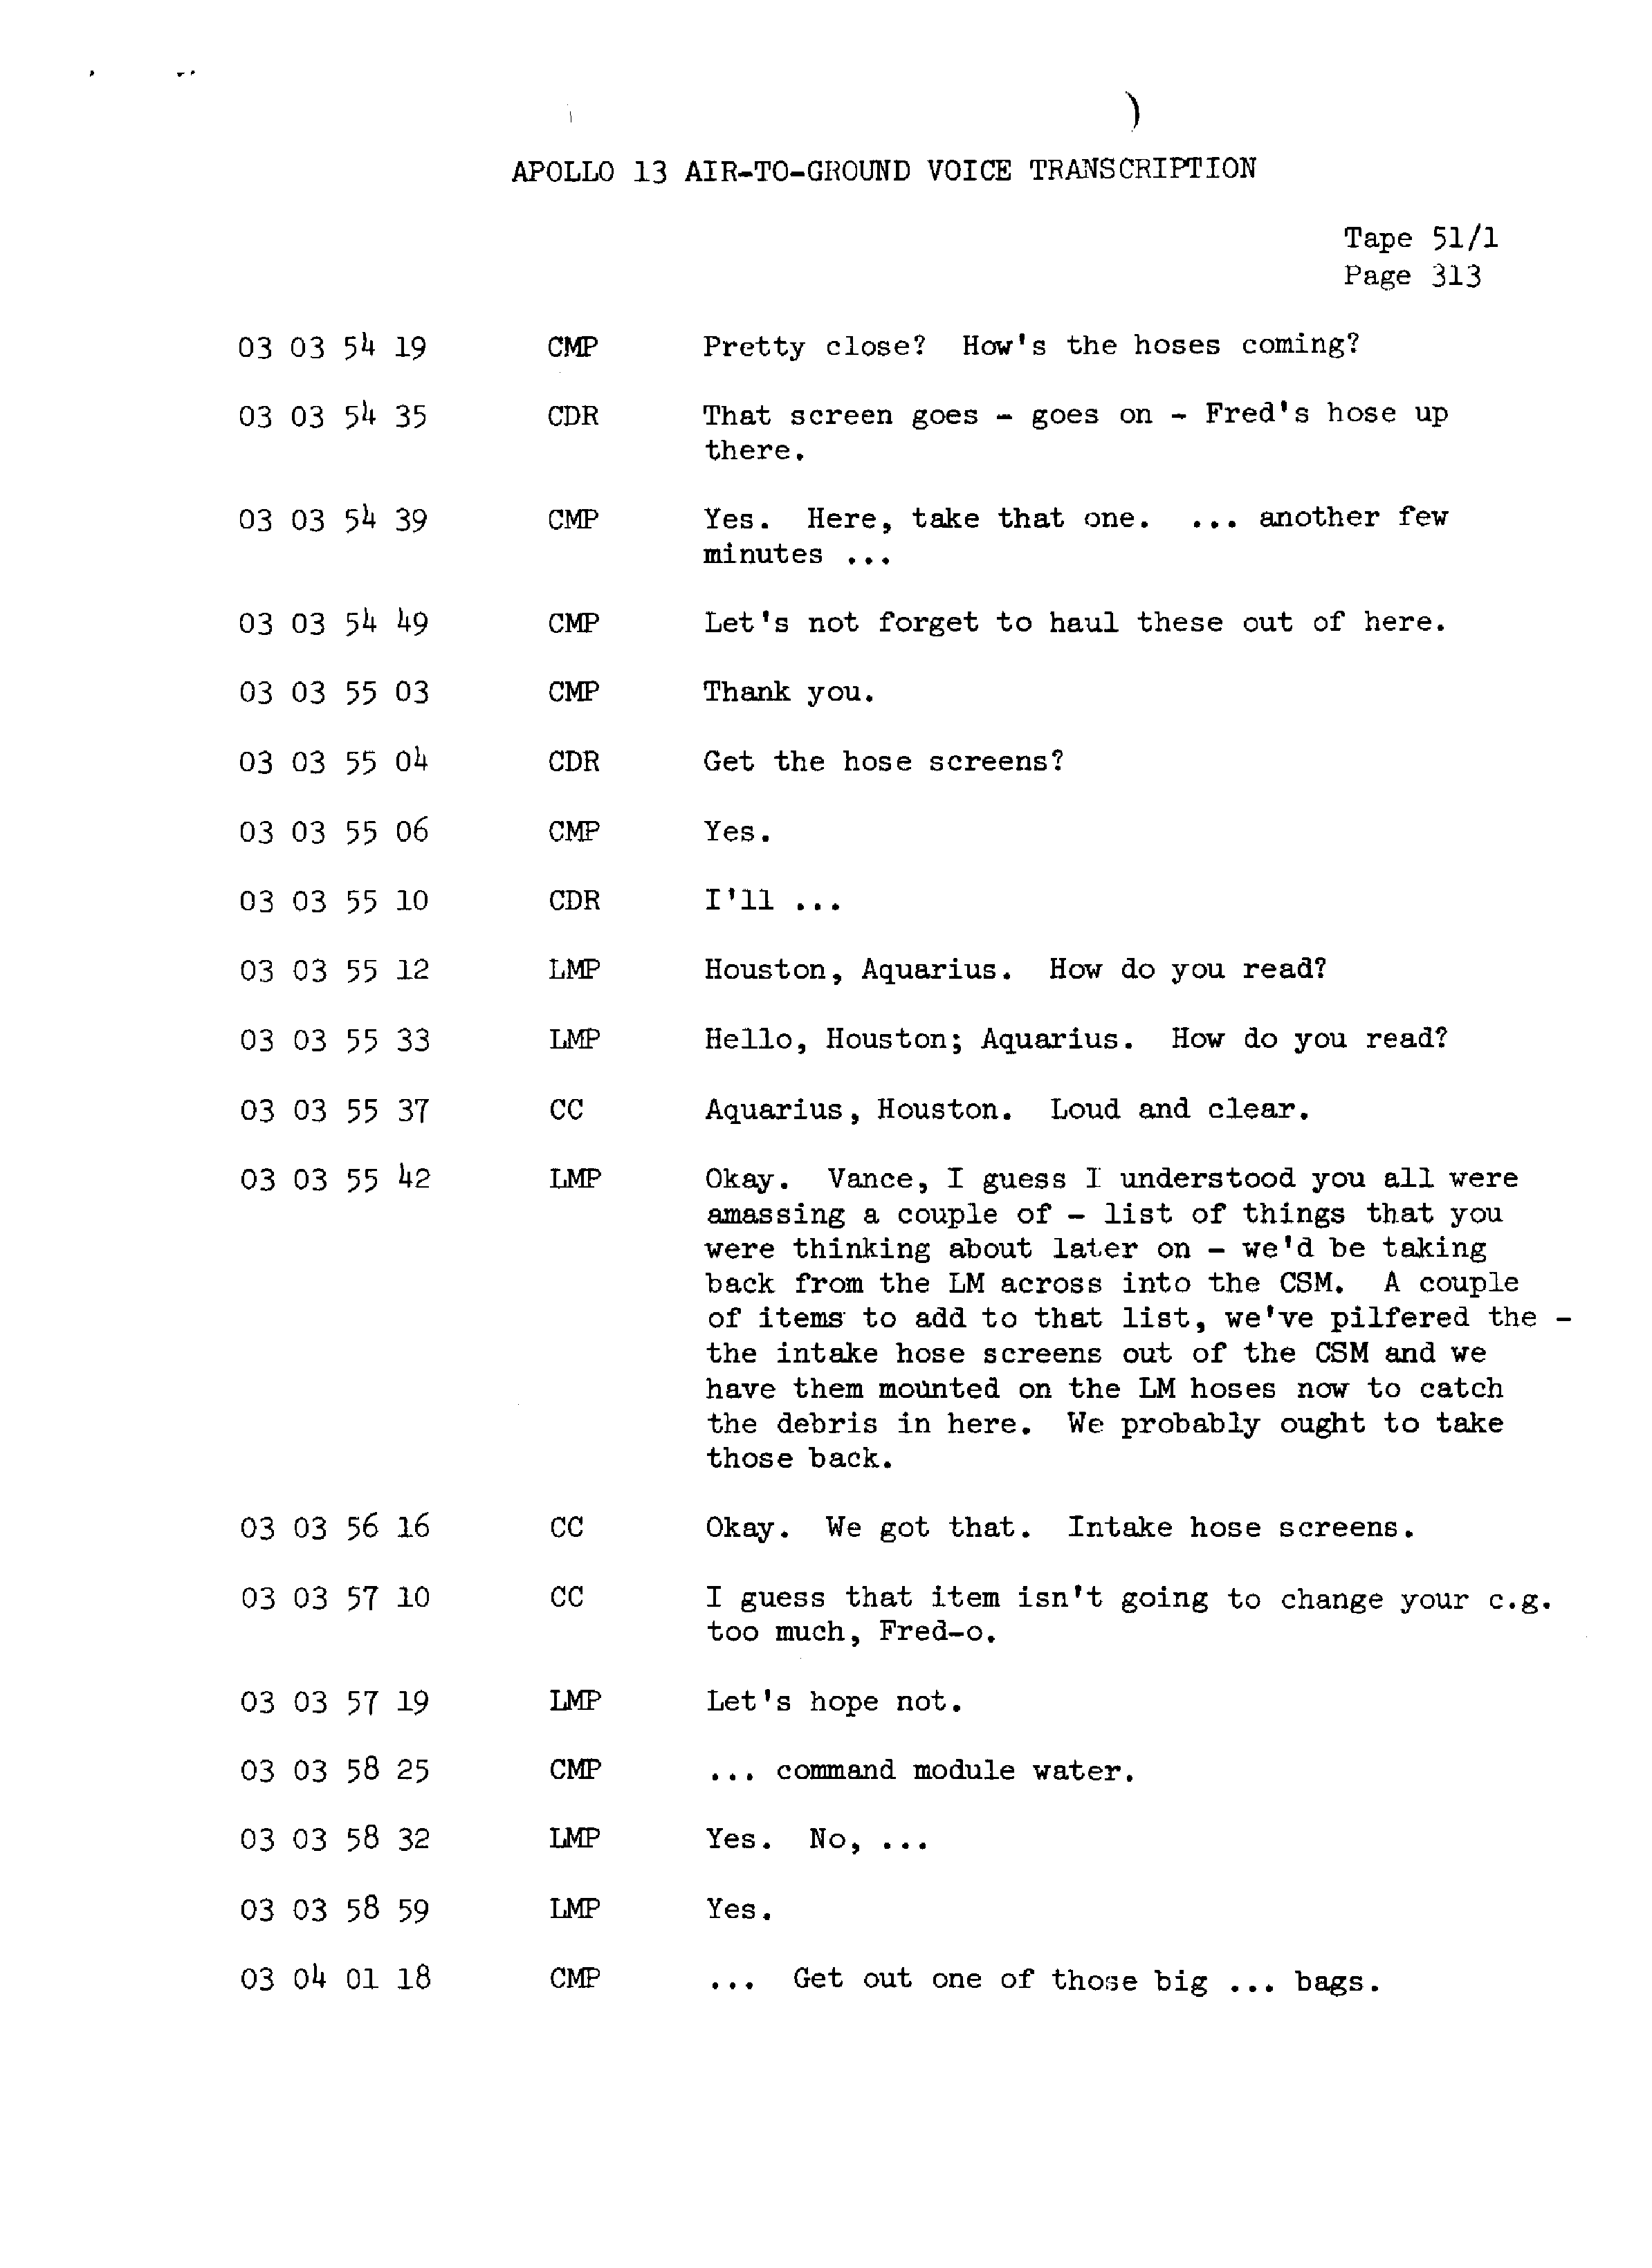 Page 320 of Apollo 13’s original transcript